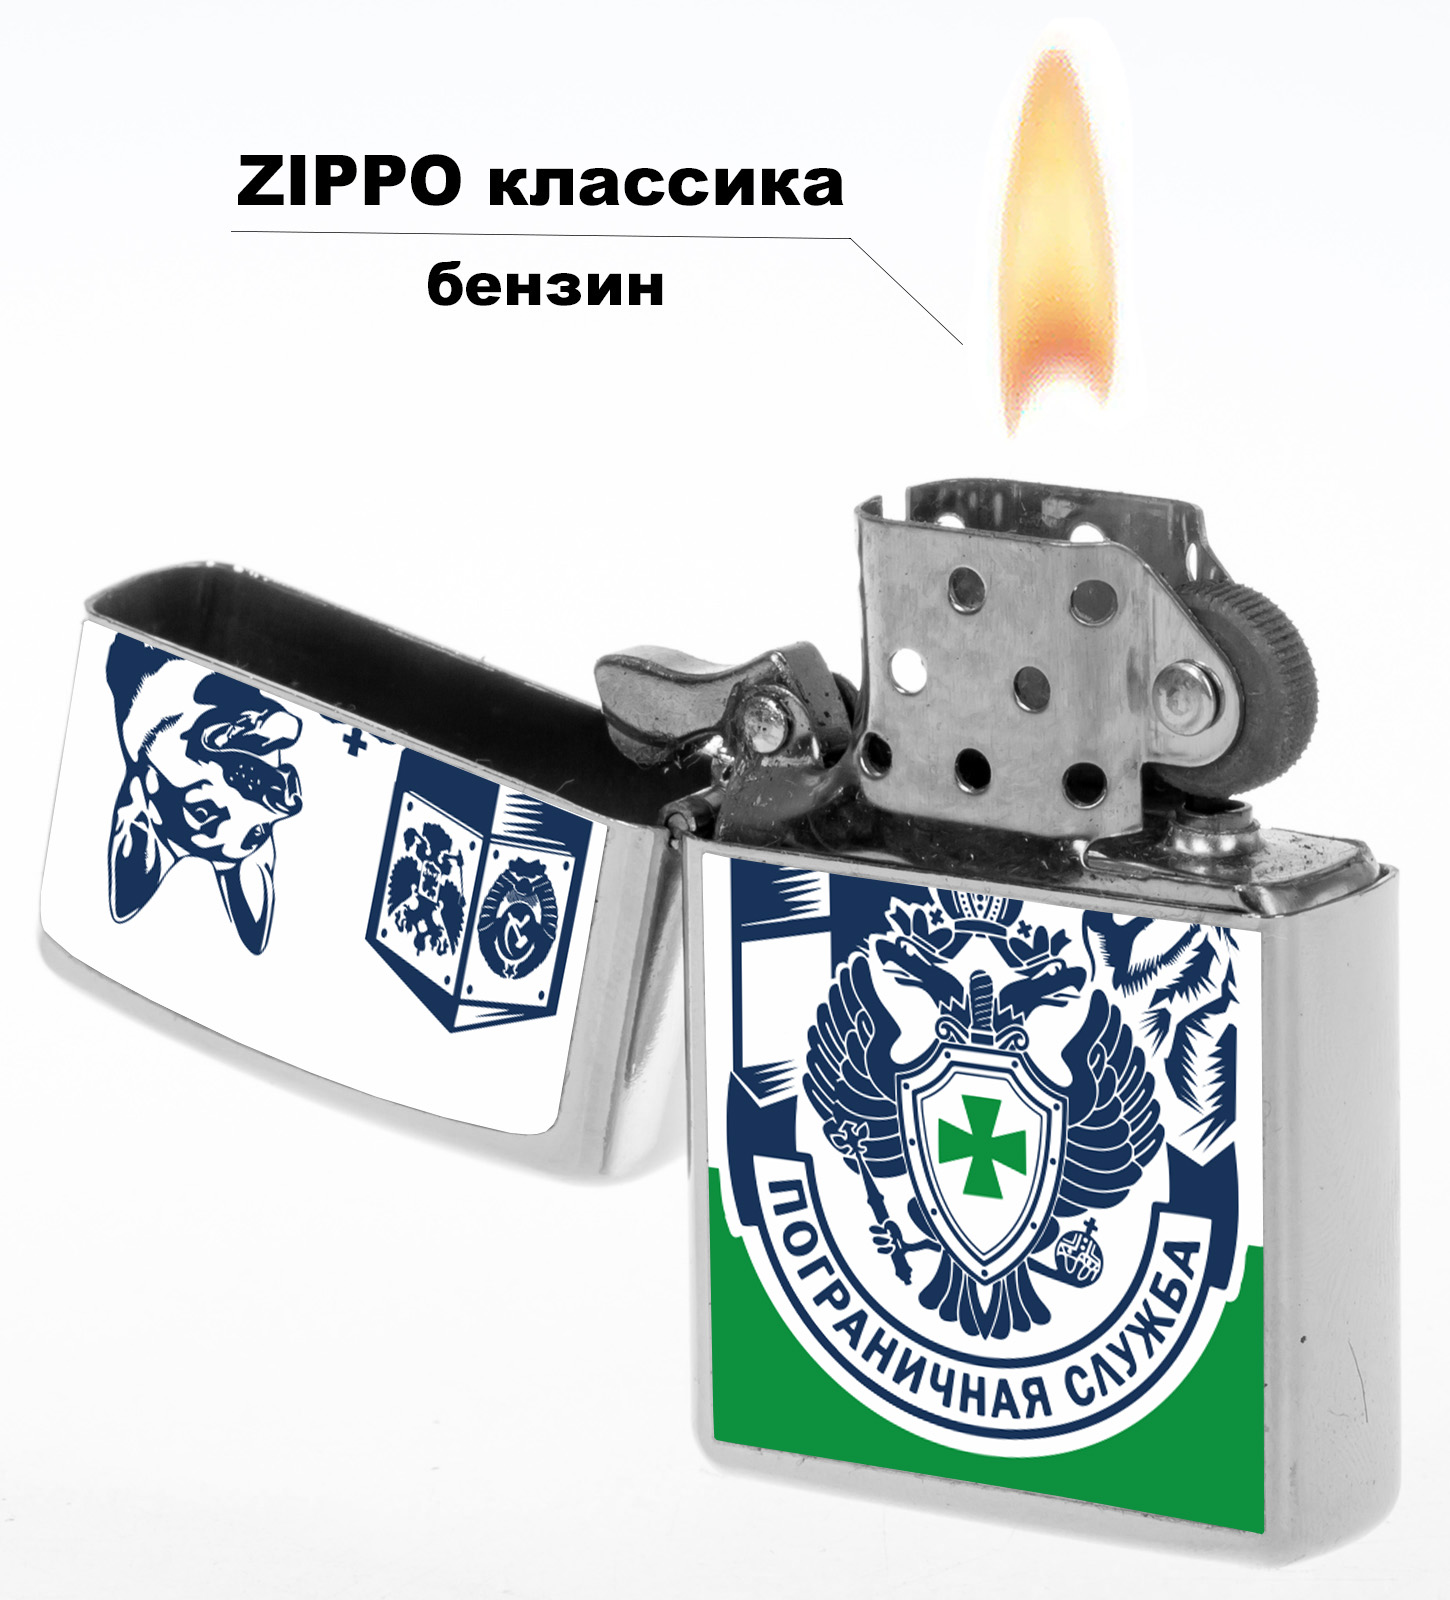 Бензиновая зажигалка с символикой Погранслужбы 